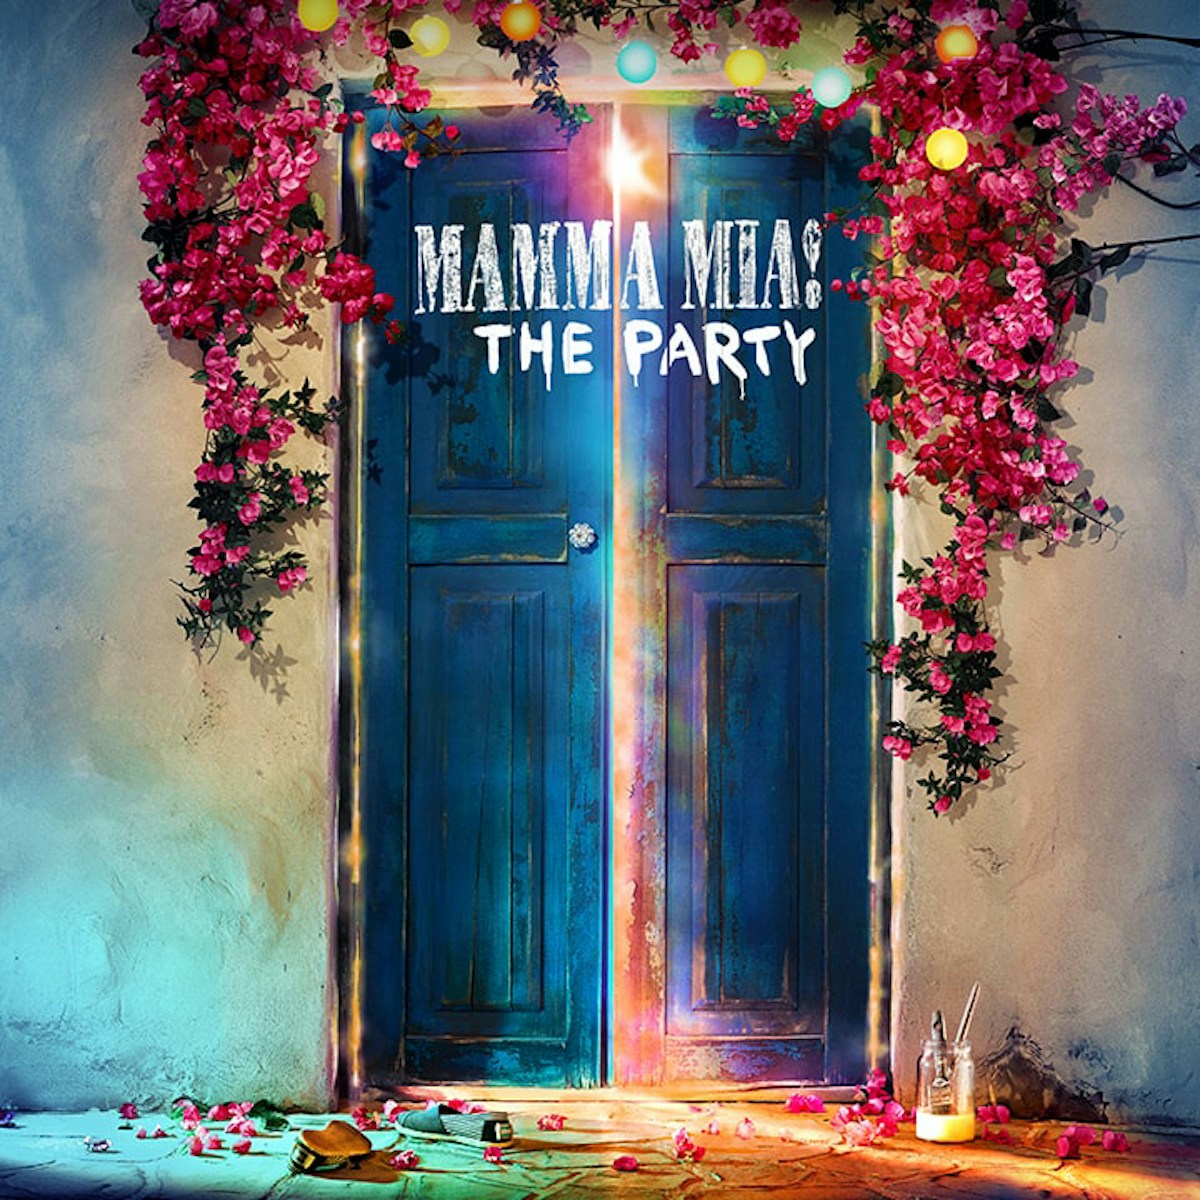 Buy Mamma Mia! - Microsoft Store